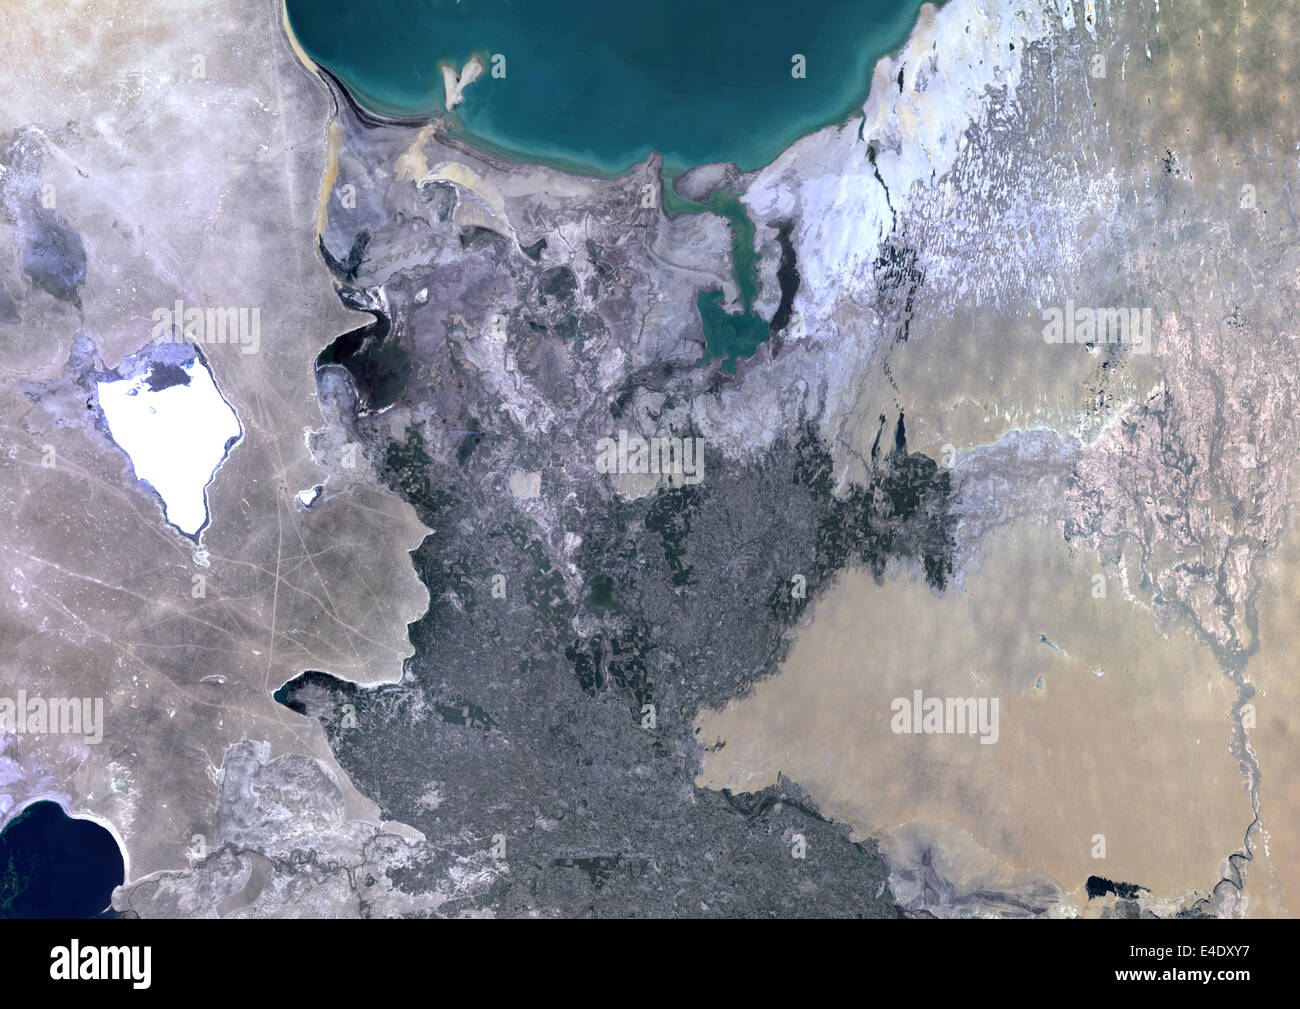 Amu Darya Delta, Uzbekistan, True Color immagine satellitare. True color satellitare immagine dell'Amu Darja Delta in Uzbekistan. L'Amu Foto Stock